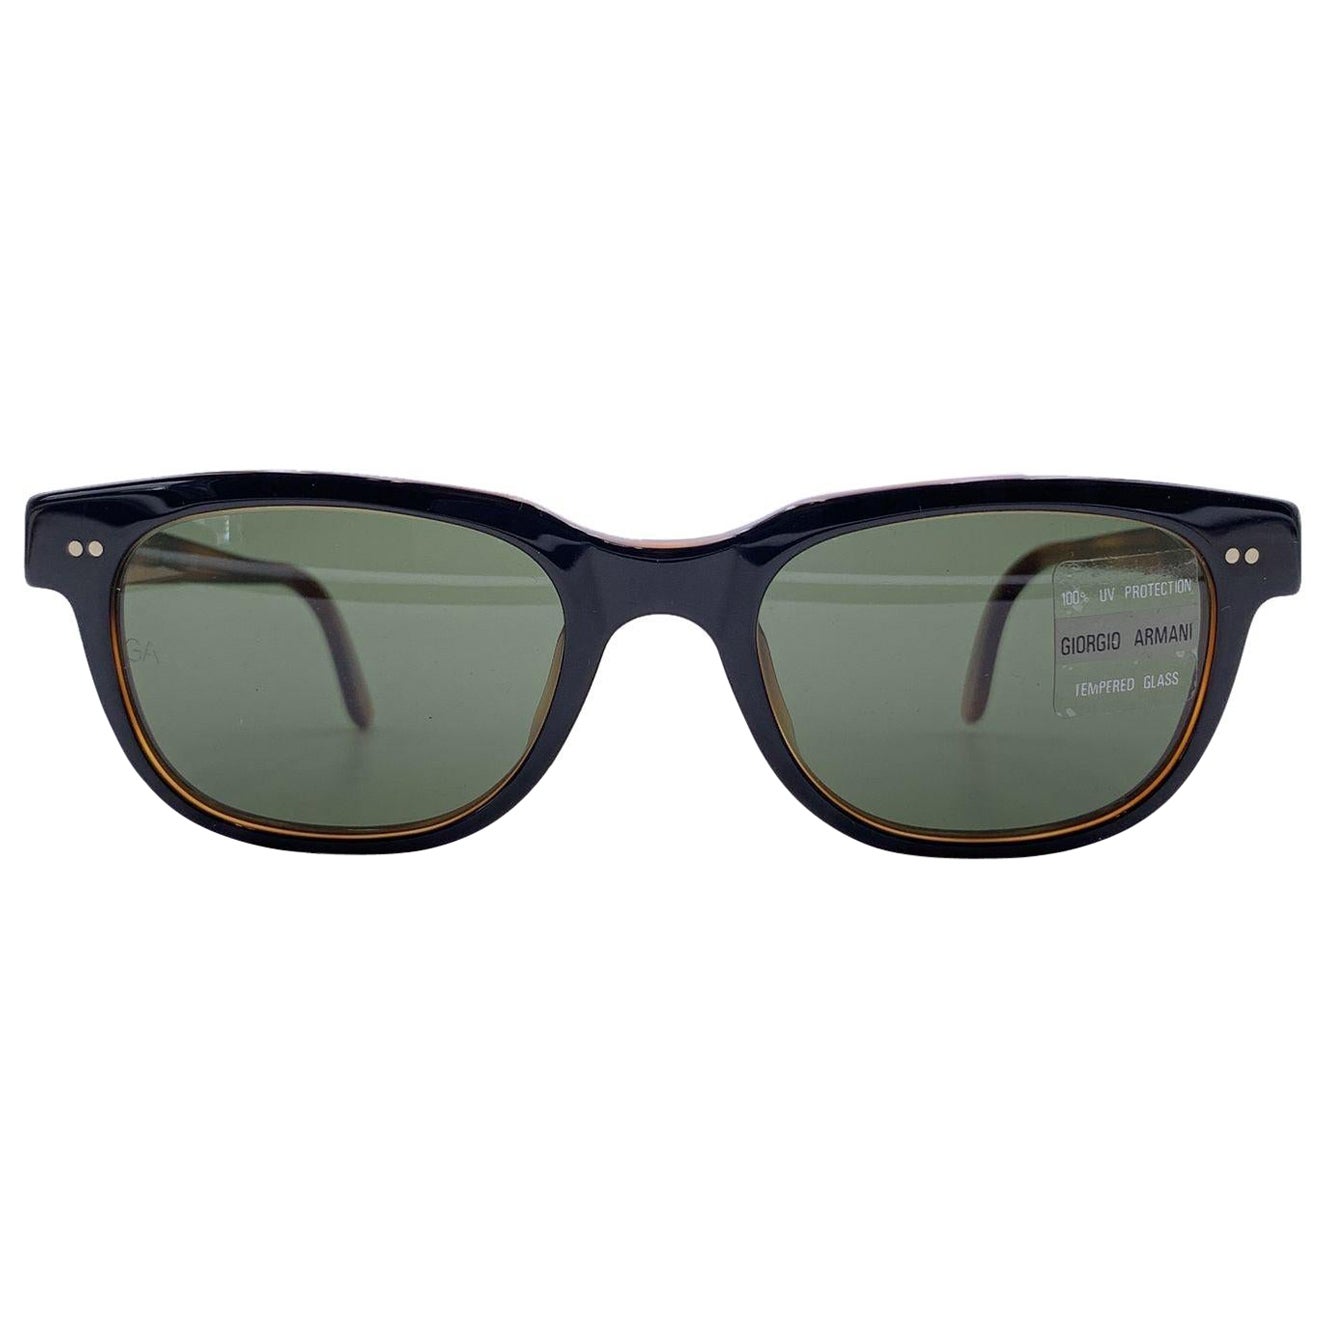 Giorgio Armani Vintage Black Brown Sunglasses 376-S 227 140 mm For Sale